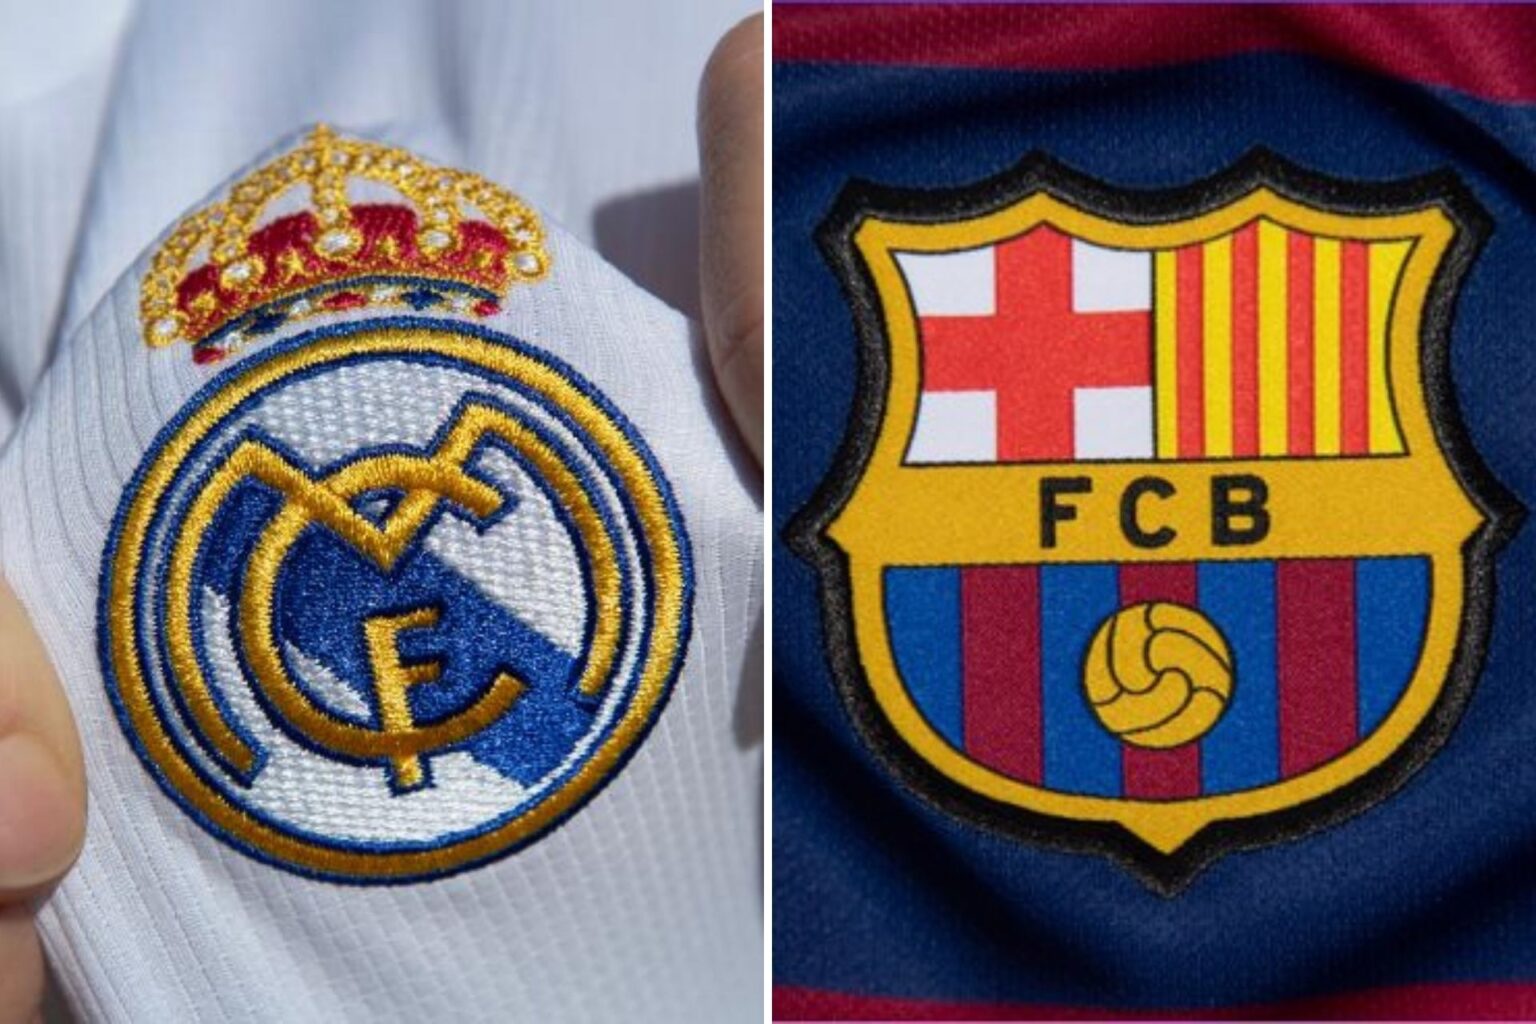 ¿Cómo se involucran los equipos más importantes del fútbol español con